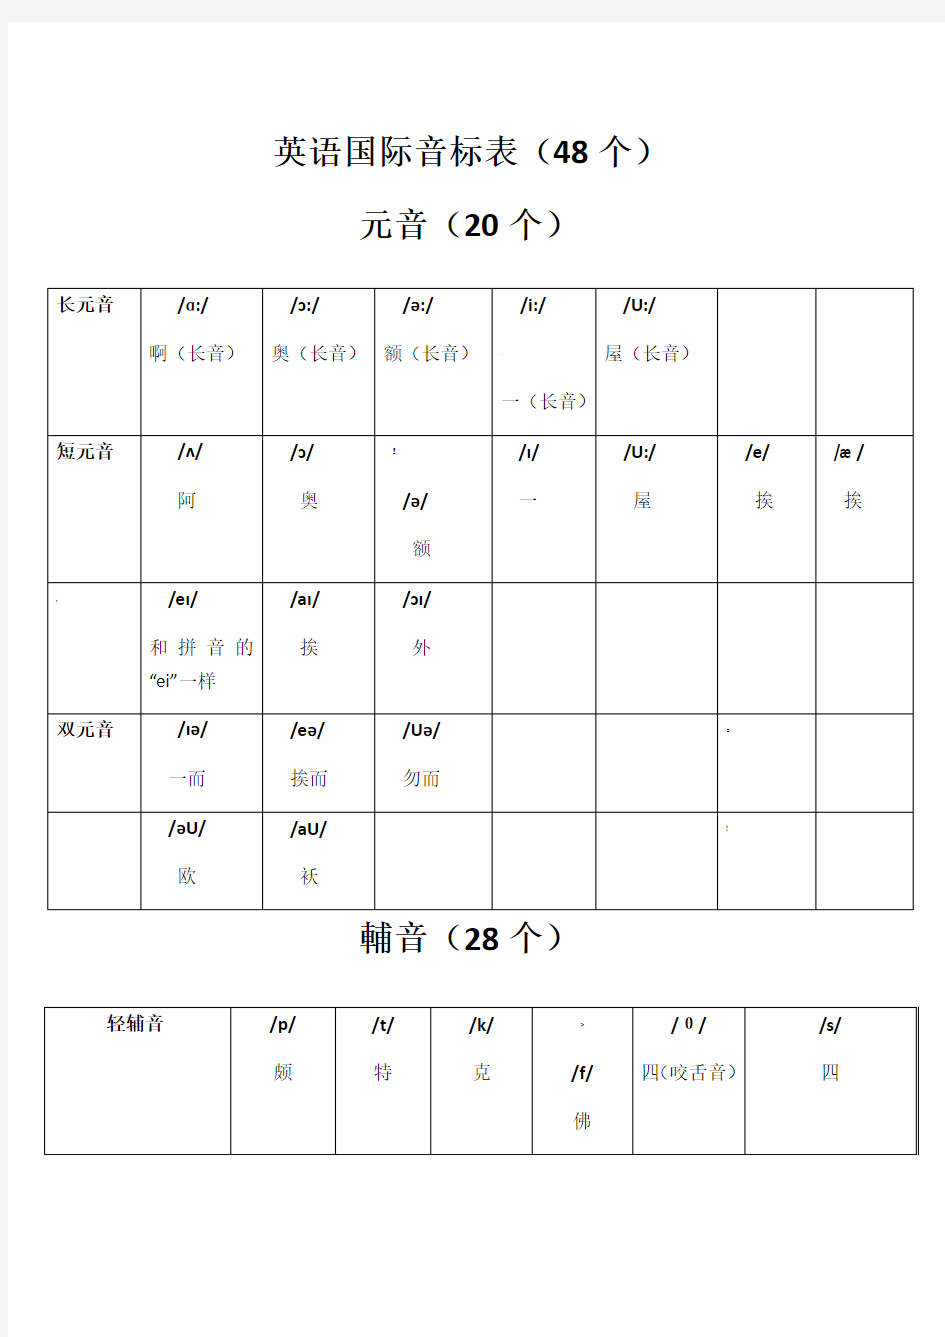 英语音标表及字母组合对照表